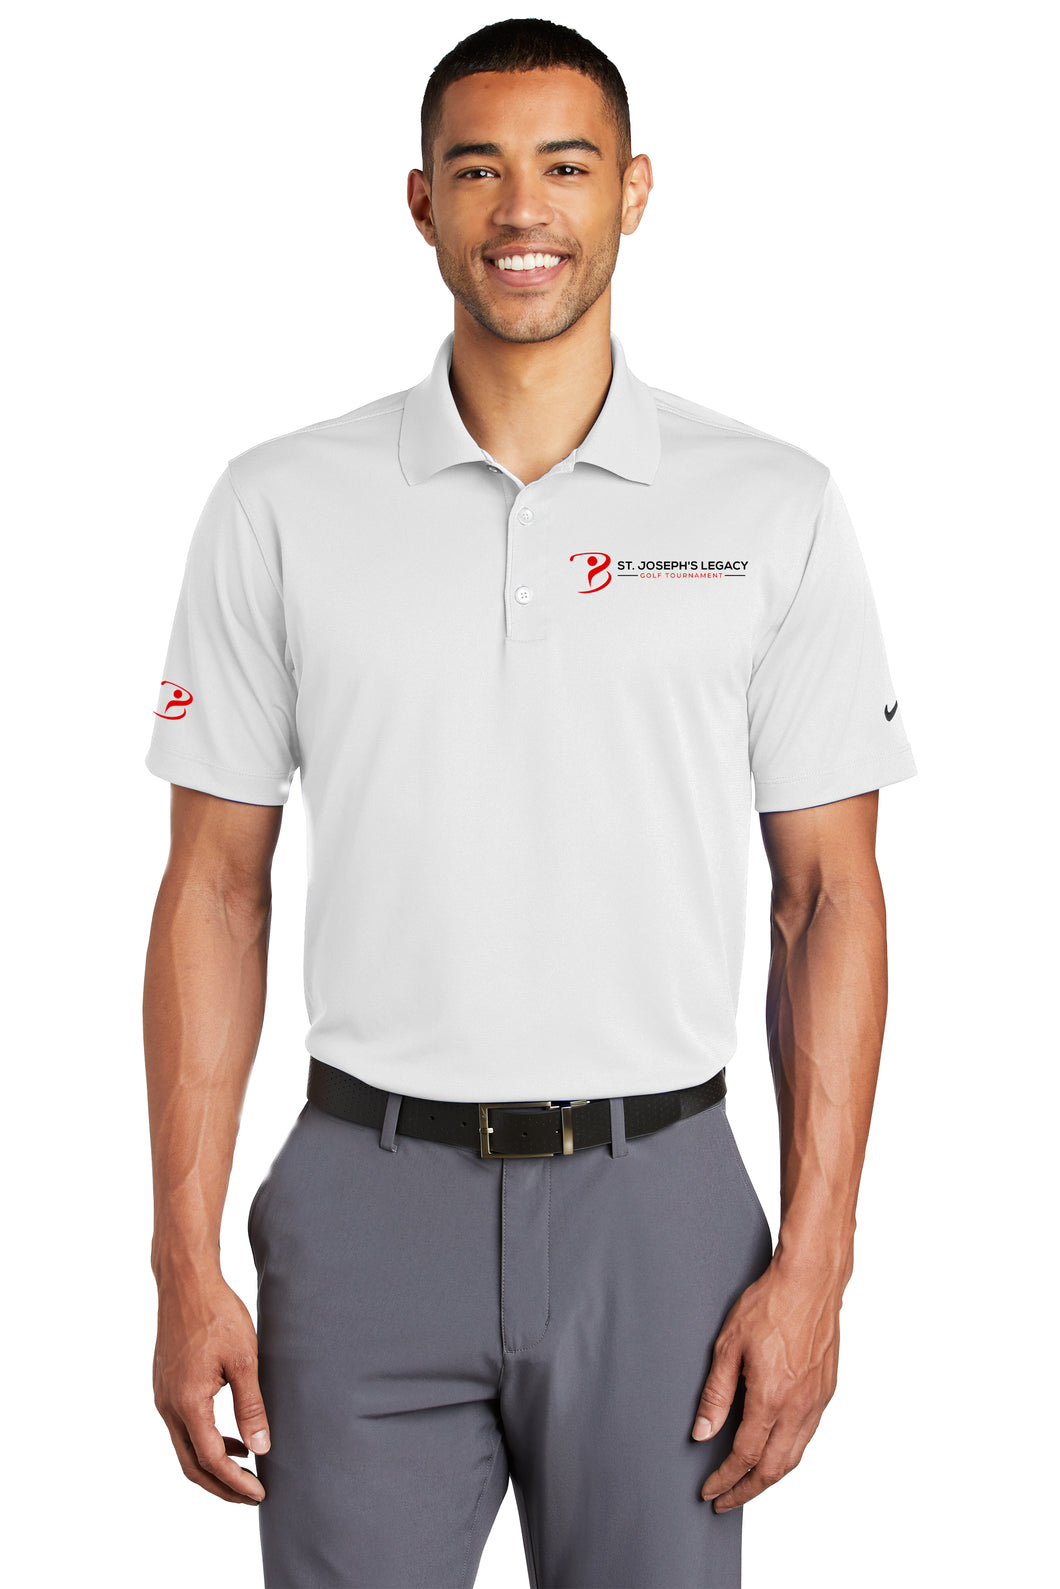 Nike SJS Golf Tournament Shirt